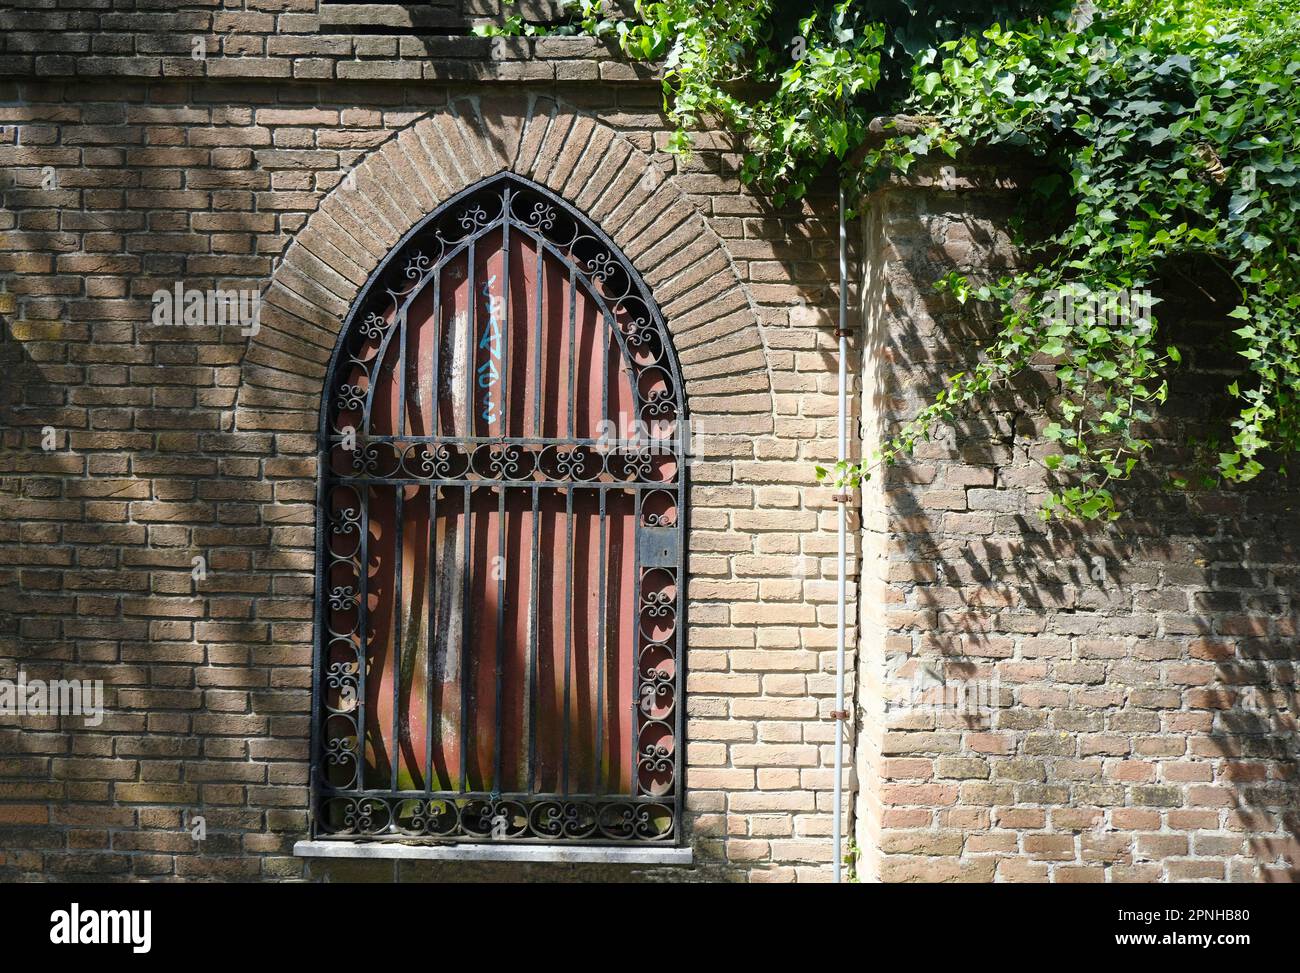 Geschlossenes Fenster mit Fensterläden in der alten Backsteinmauer. Schatten und Efeu-Blätter an der Ziegelwand. Natürlicher Hintergrund im Freien Stockfoto